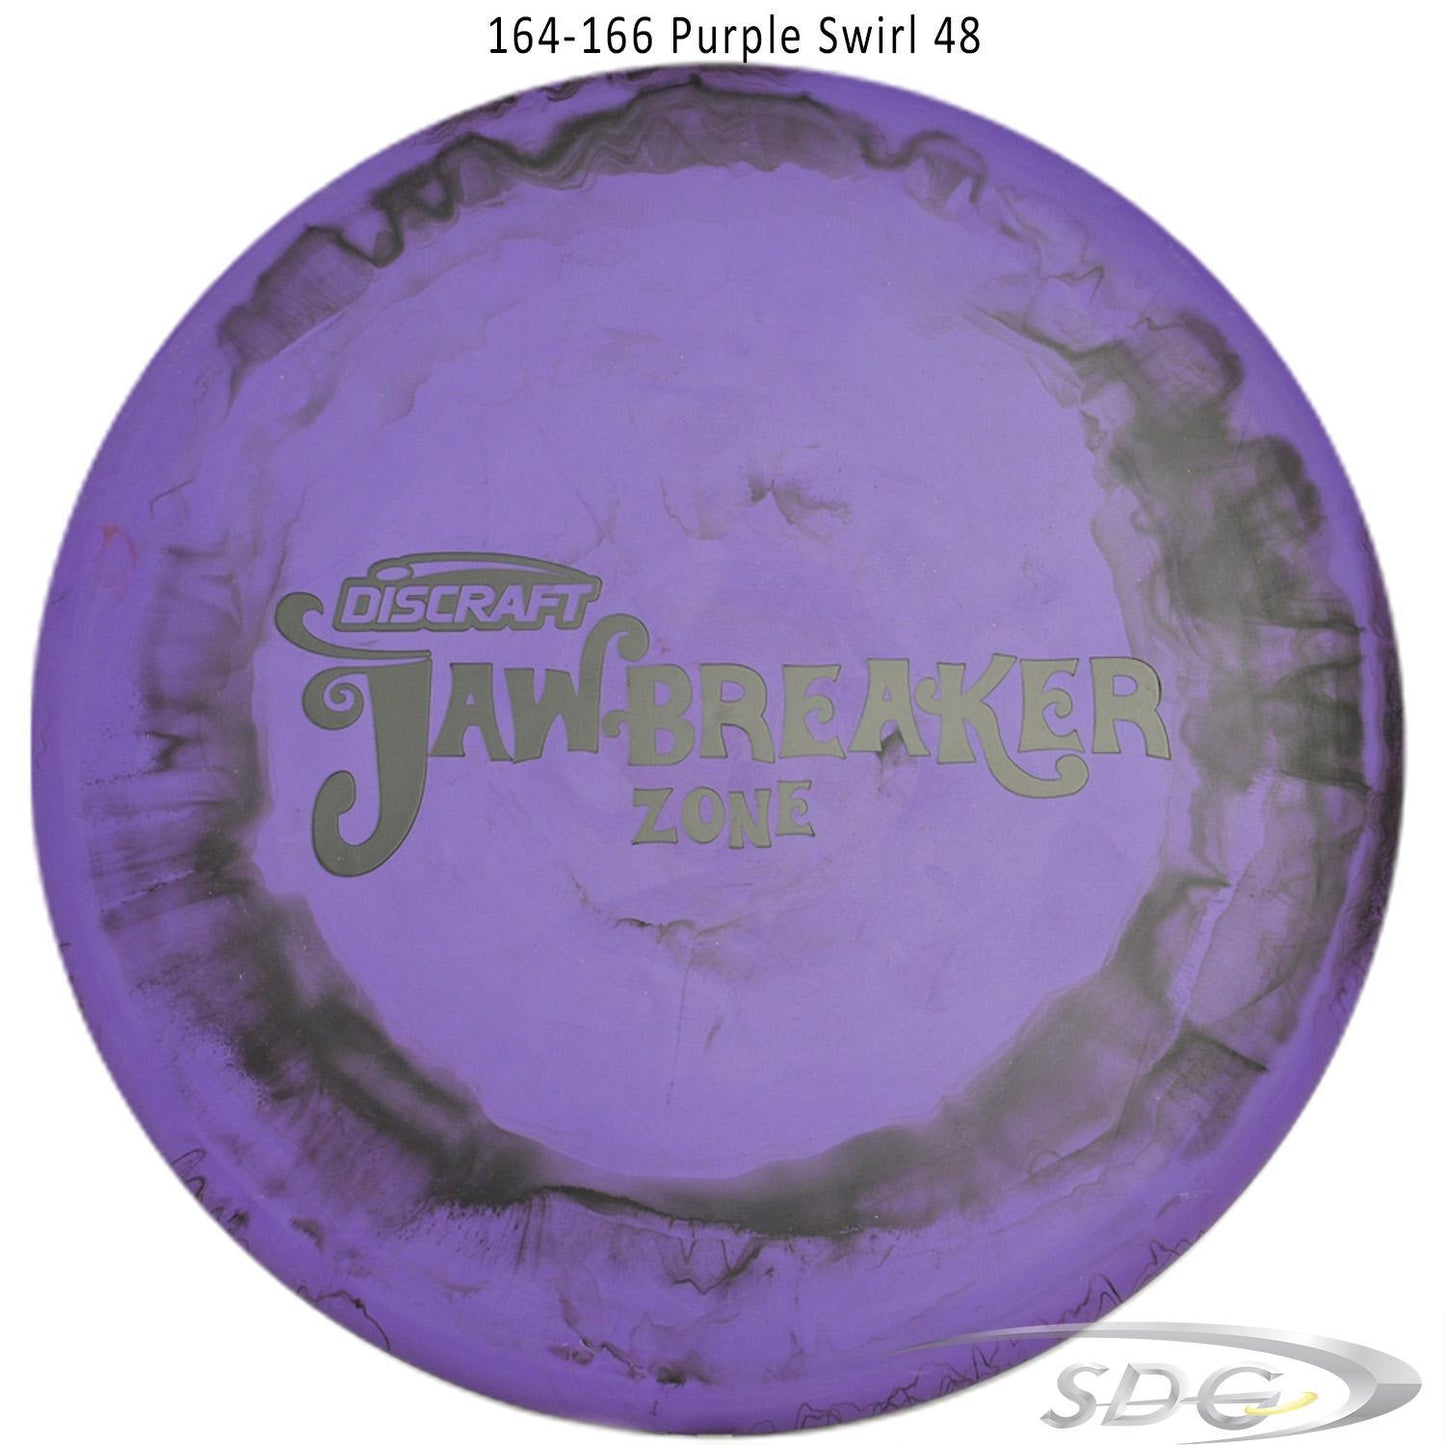 discraft-jawbreaker-zone-disc-golf-putter 164-166 Purple Swirl 48